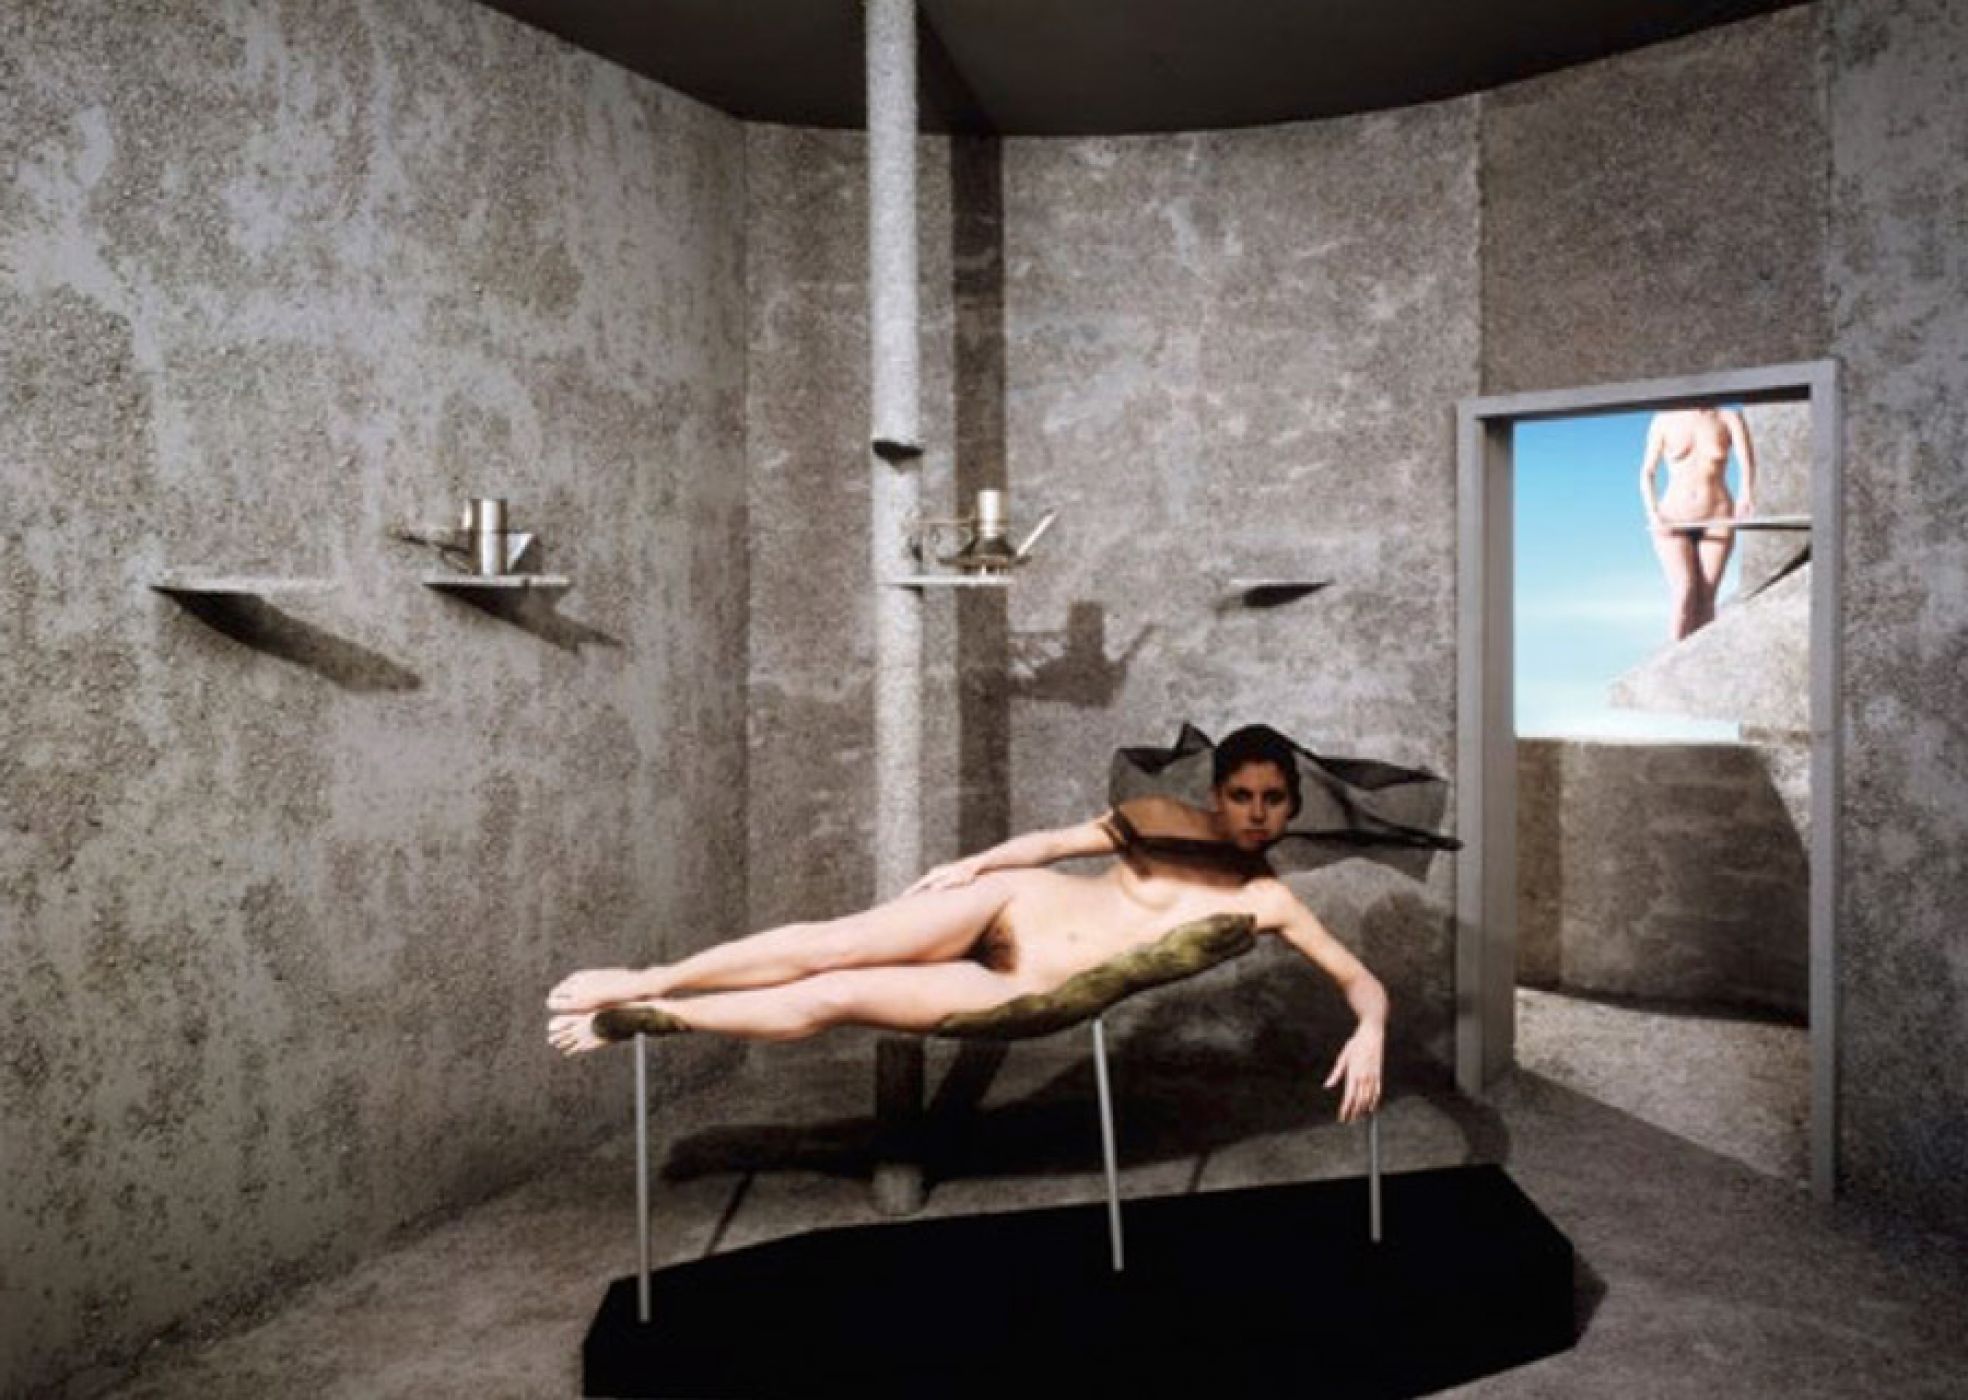 Occhiomagico, “La camera chiara di Narciso”, 1981